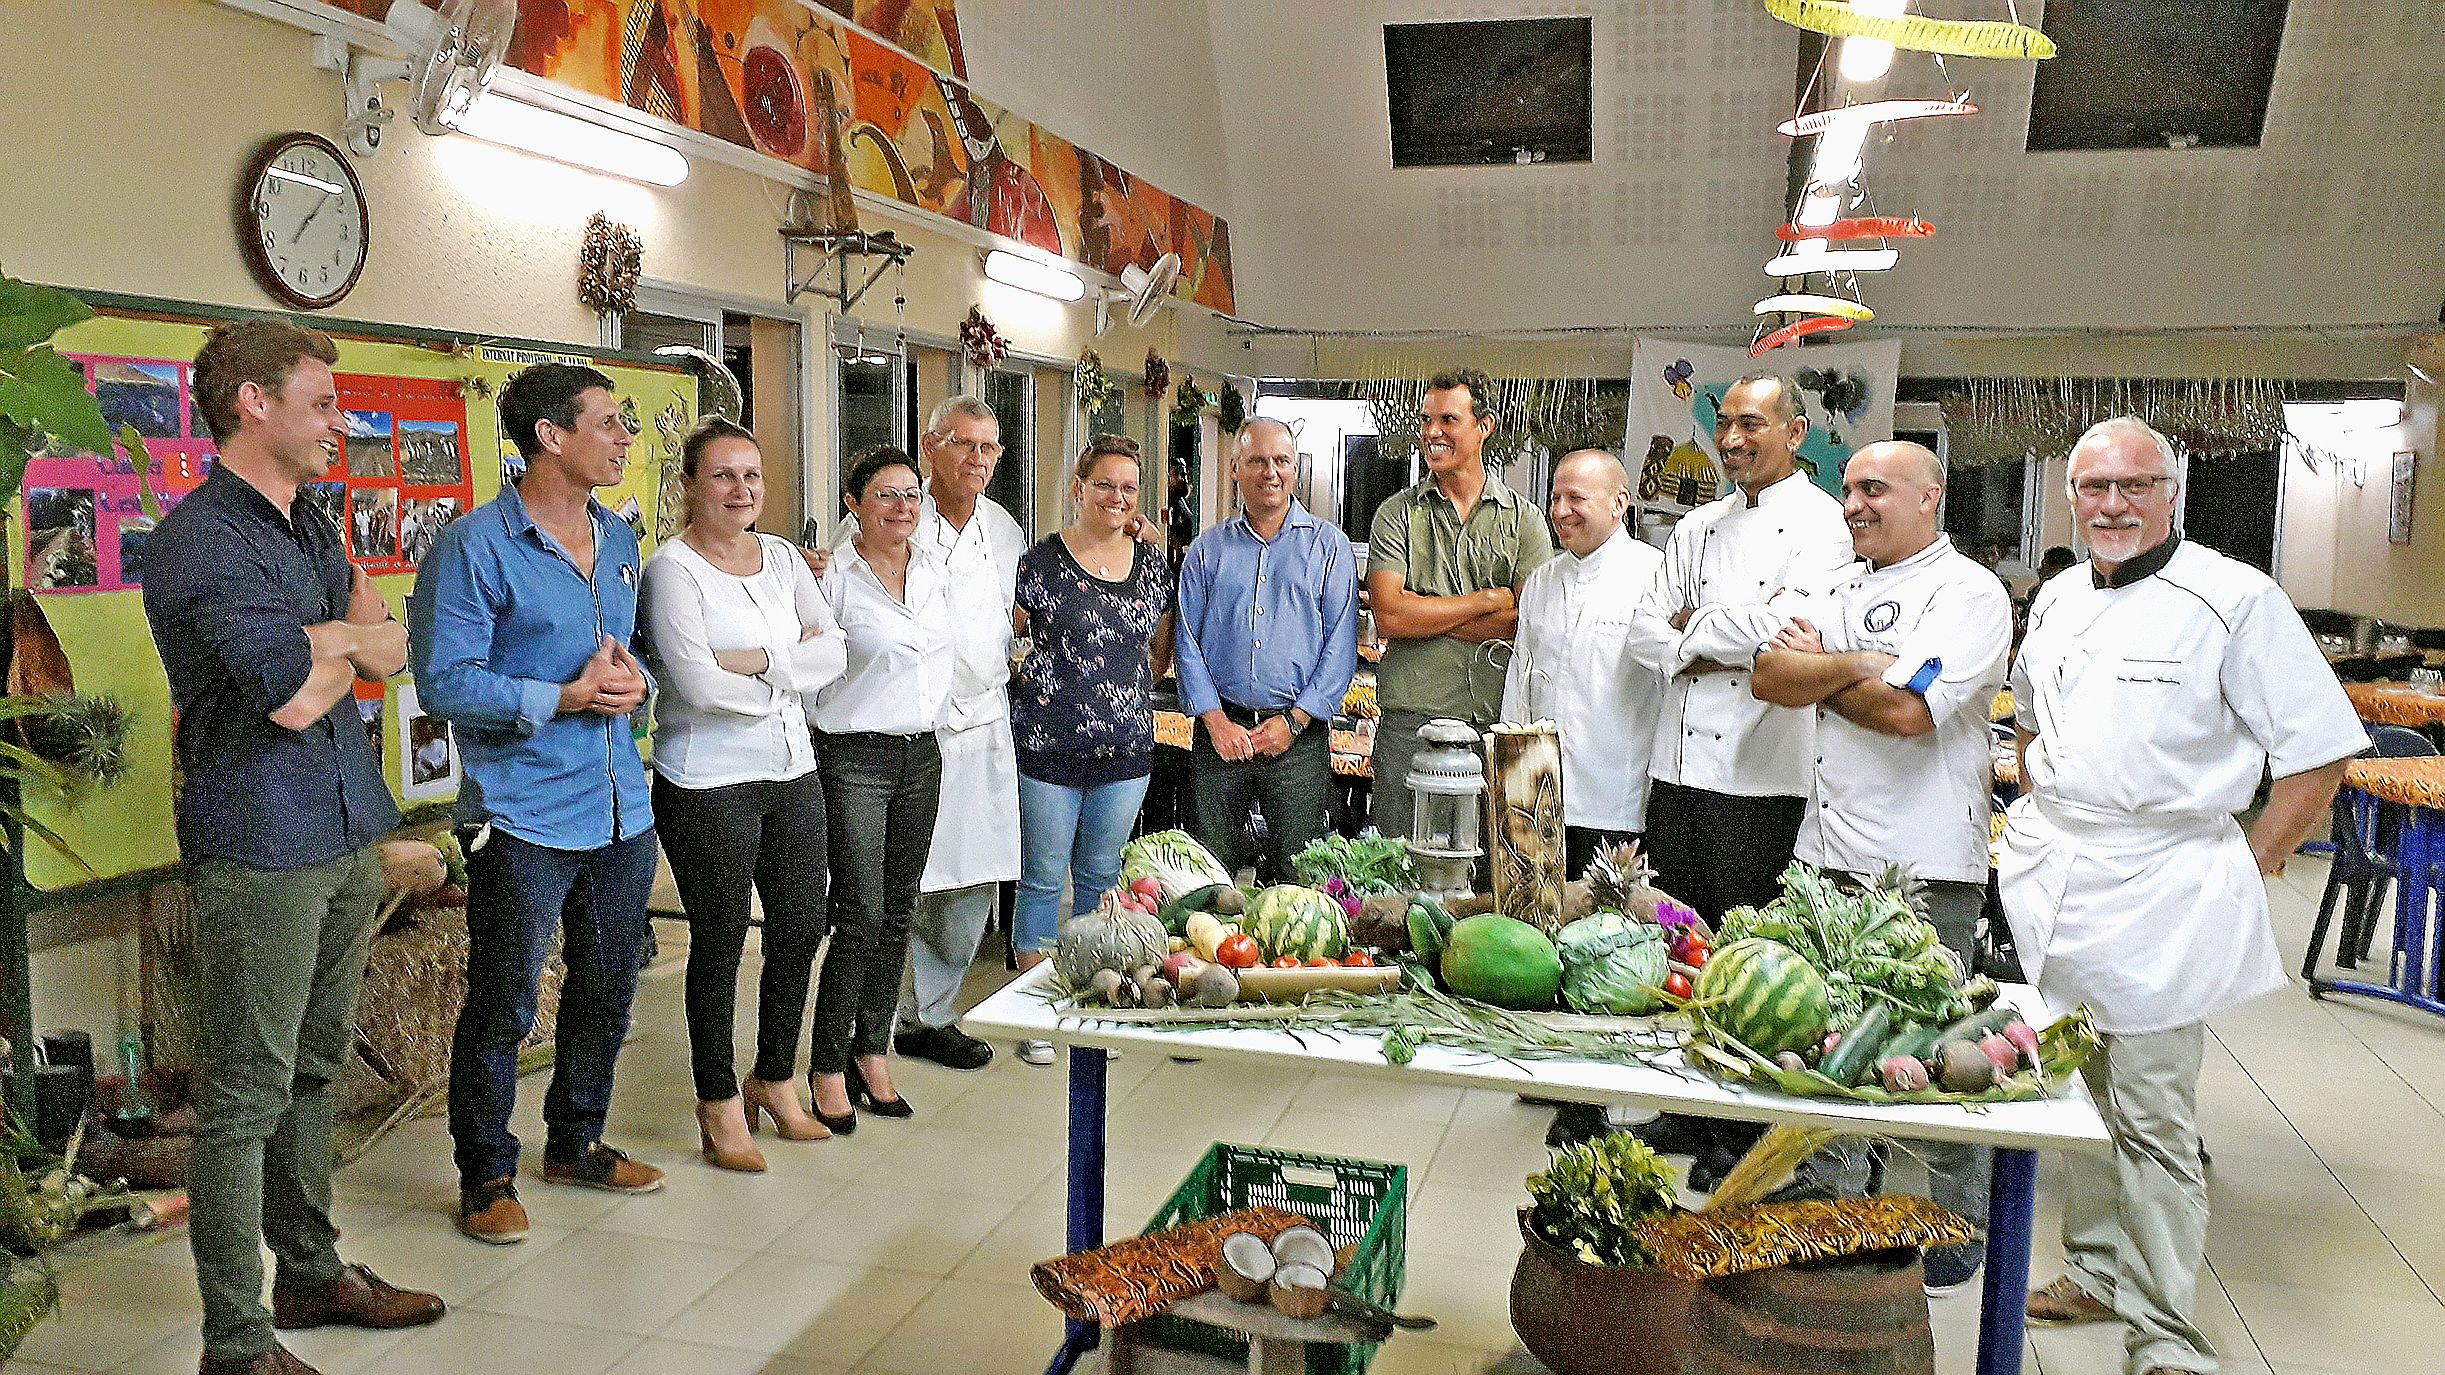 Les officiels, qui ont apporté leur concours à cette sympathique opération gastronomique, devant une belle présentation de fruits et de légumes du cru.